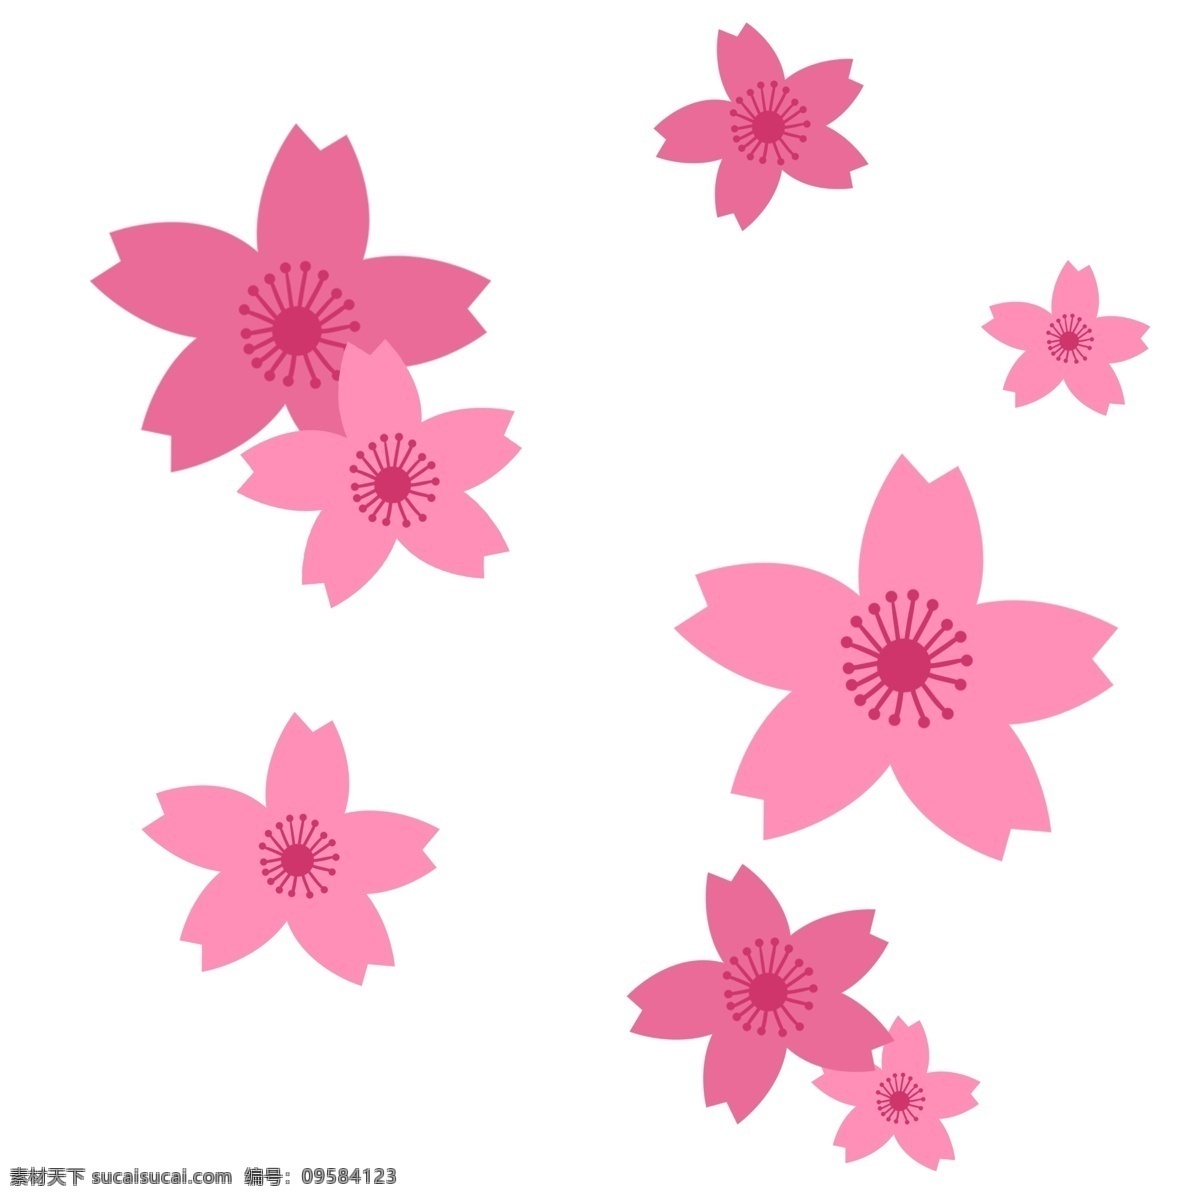 日本 樱花 装饰 插画 日本樱花 粉色的樱花 漂亮的樱花 创意樱花 漂浮的樱花 樱花装饰 立体樱花